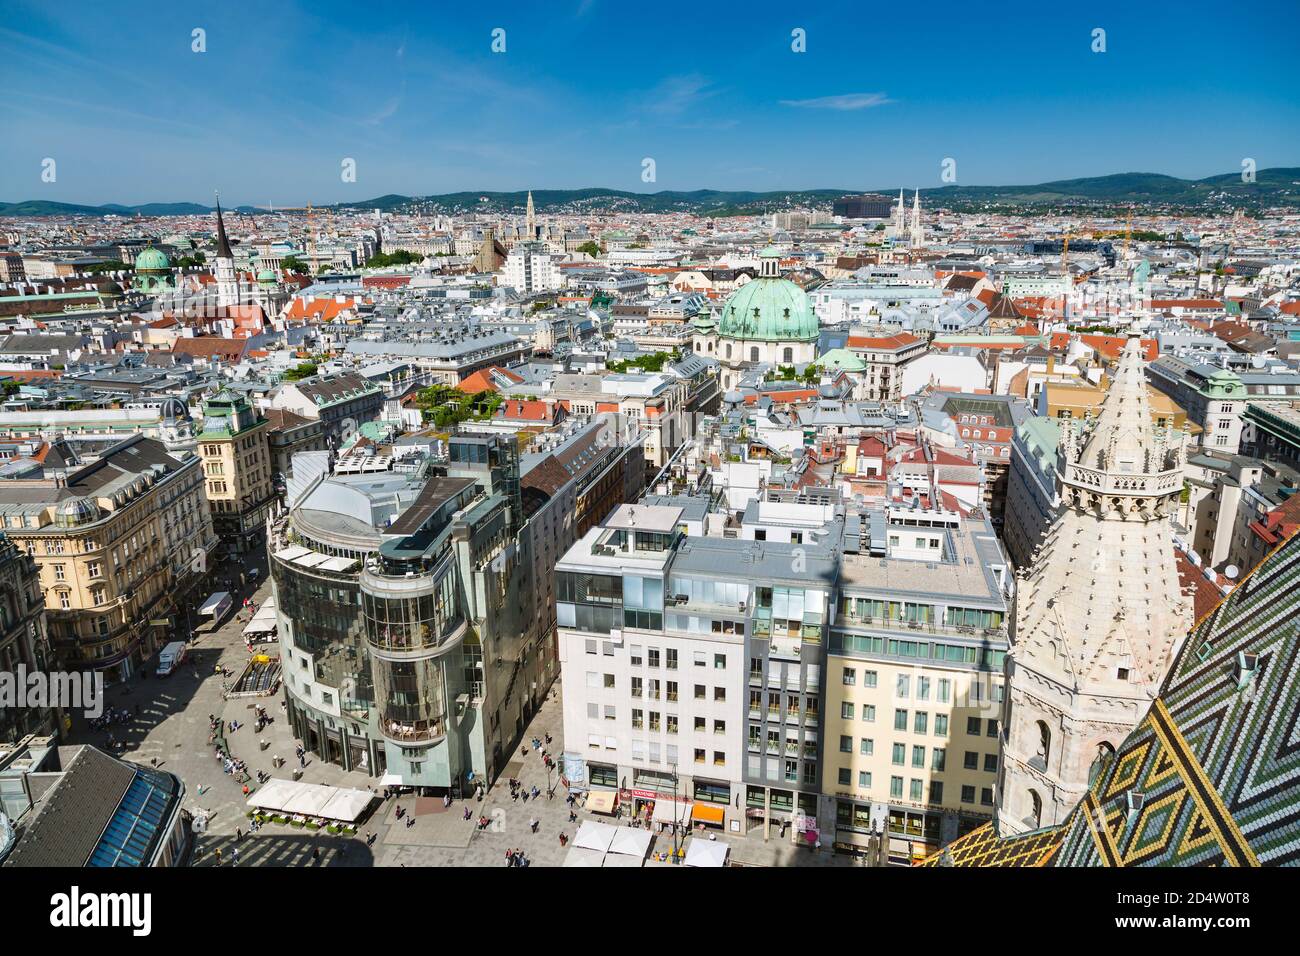 WIEN - 7. MAI: Blick über die Wiener Einkaufsstraße Graben mit vielen Kirchen im Hintergrund, Österreich am 7. Mai 2018 Stockfoto